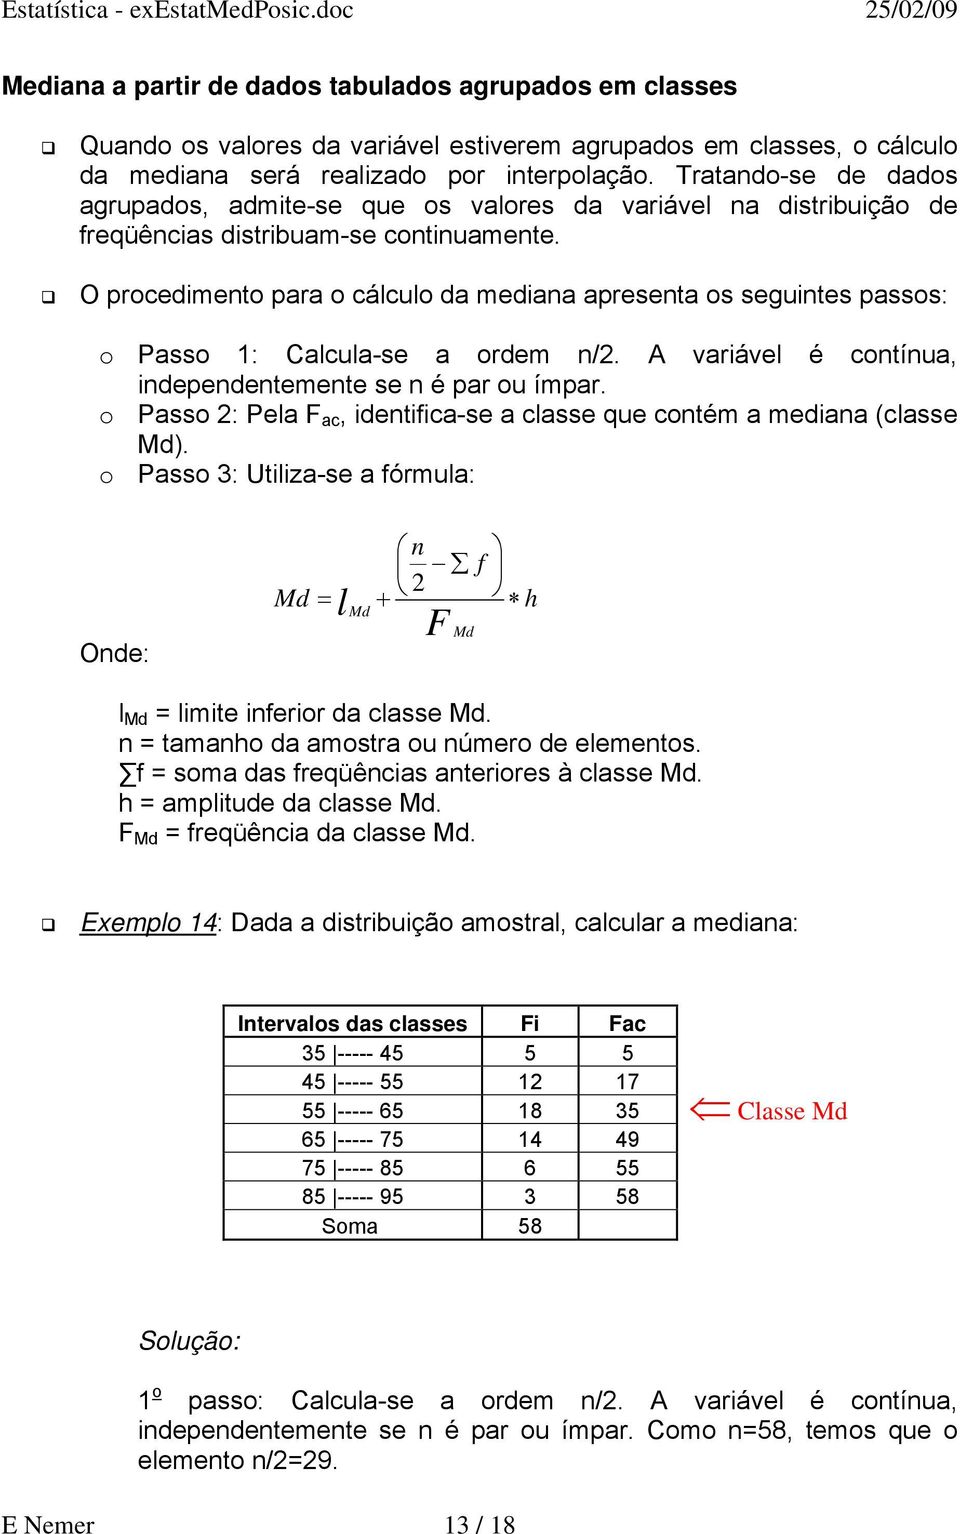 O procedimento para o cálculo da mediana apresenta os seguintes passos: o Passo 1: Calcula-se a ordem n/2. A variável é contínua, independentemente se n é par ou ímpar.